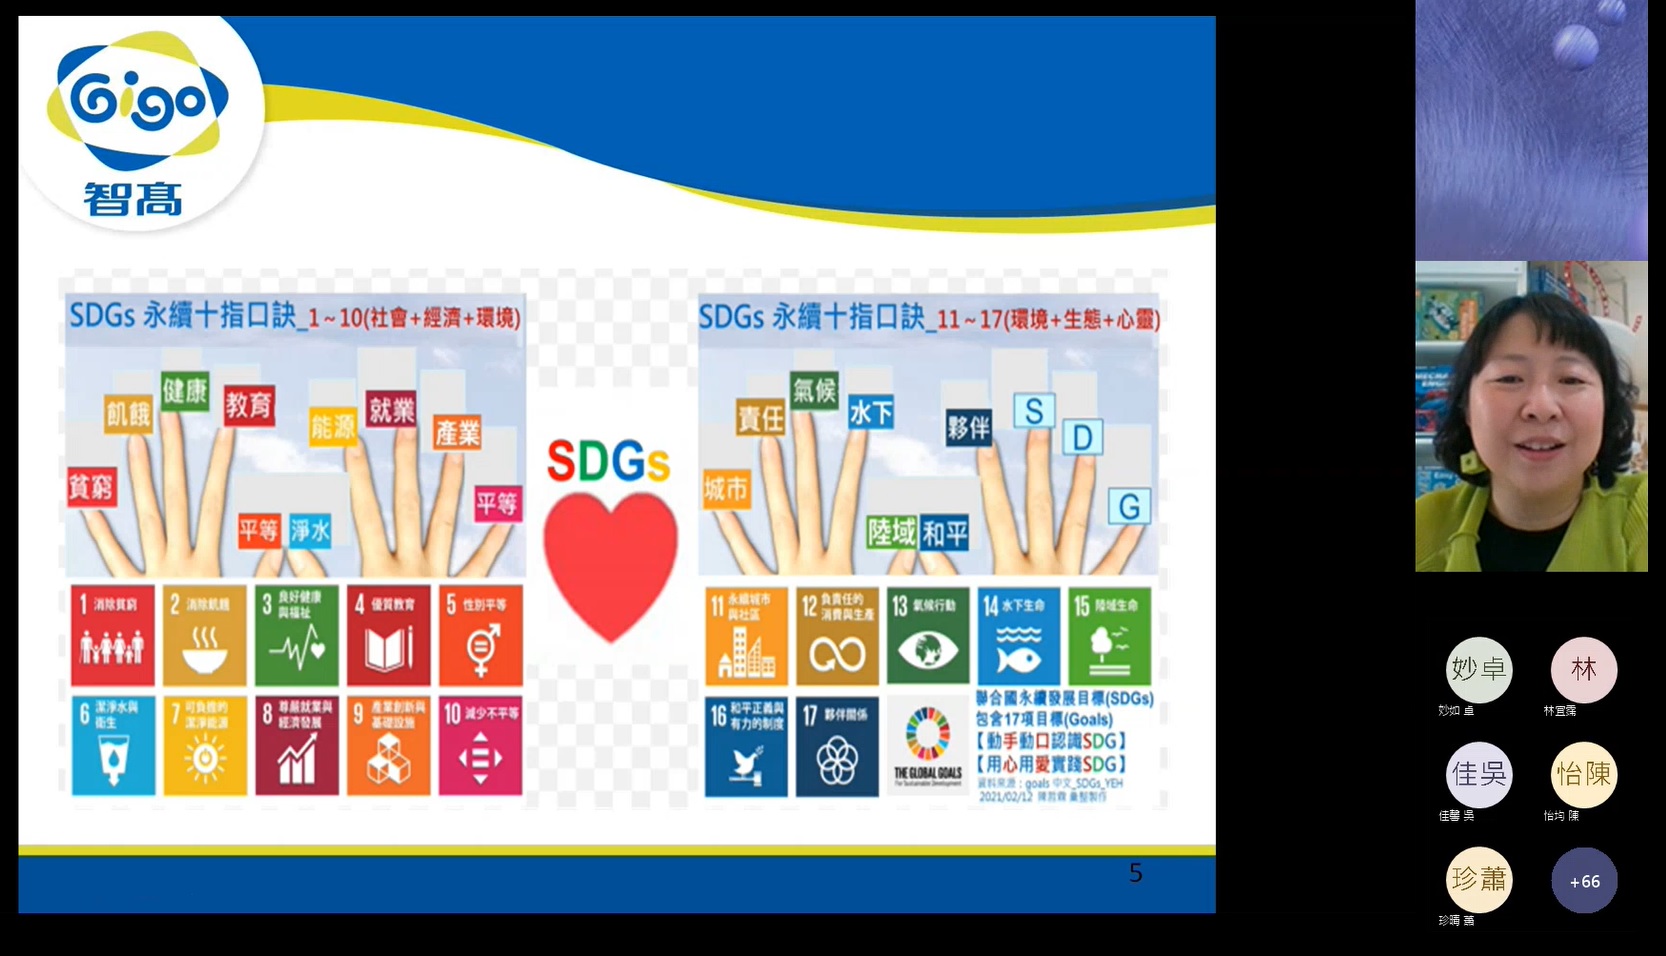 講師林玫芸副總解說SDGs指標口訣